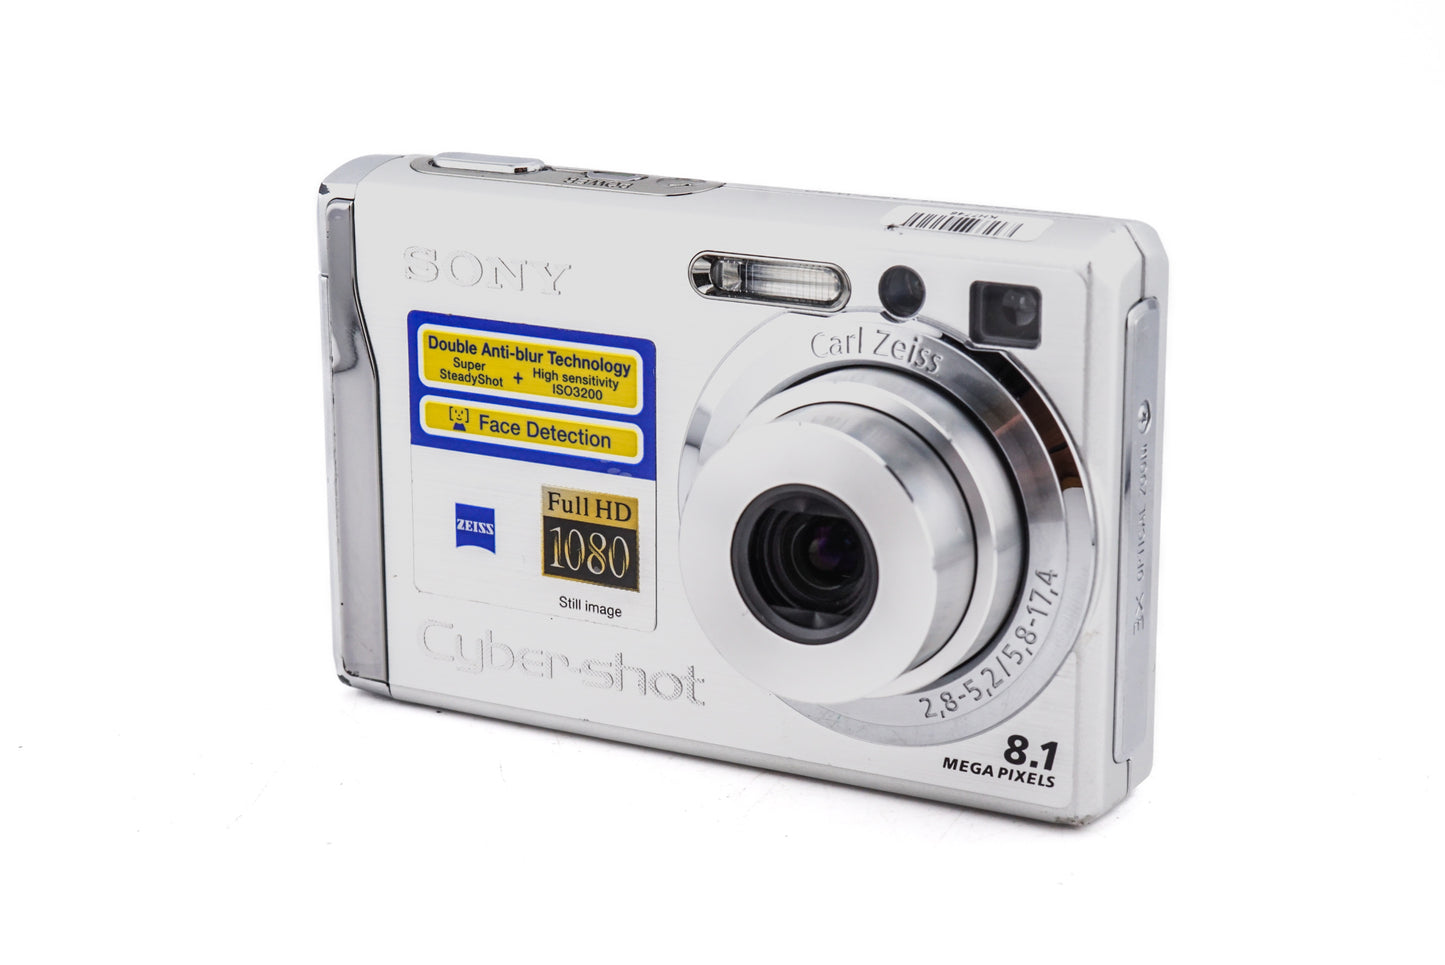 Sony Cybershot DSC-W90 - Camera